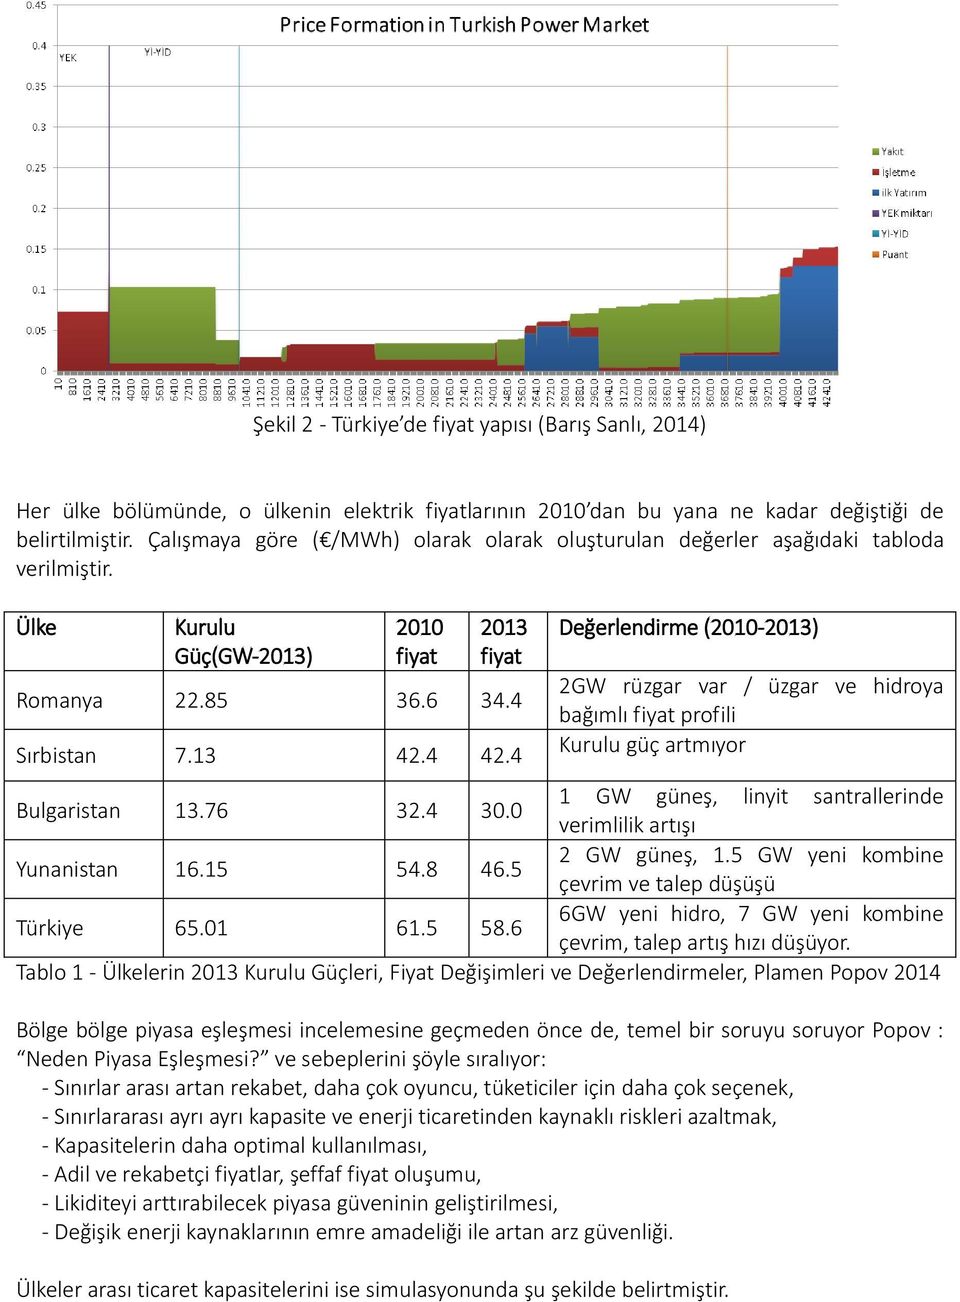 4 Değerlendirme (2010-2013) 2GW rüzgar var / üzgar ve hidroya bağımlı fiyat profili Kurulu güç artmıyor Bulgaristan 13.76 32.4 30.0 1 GW güneş, linyit santrallerinde verimlilik artışı Yunanistan 16.